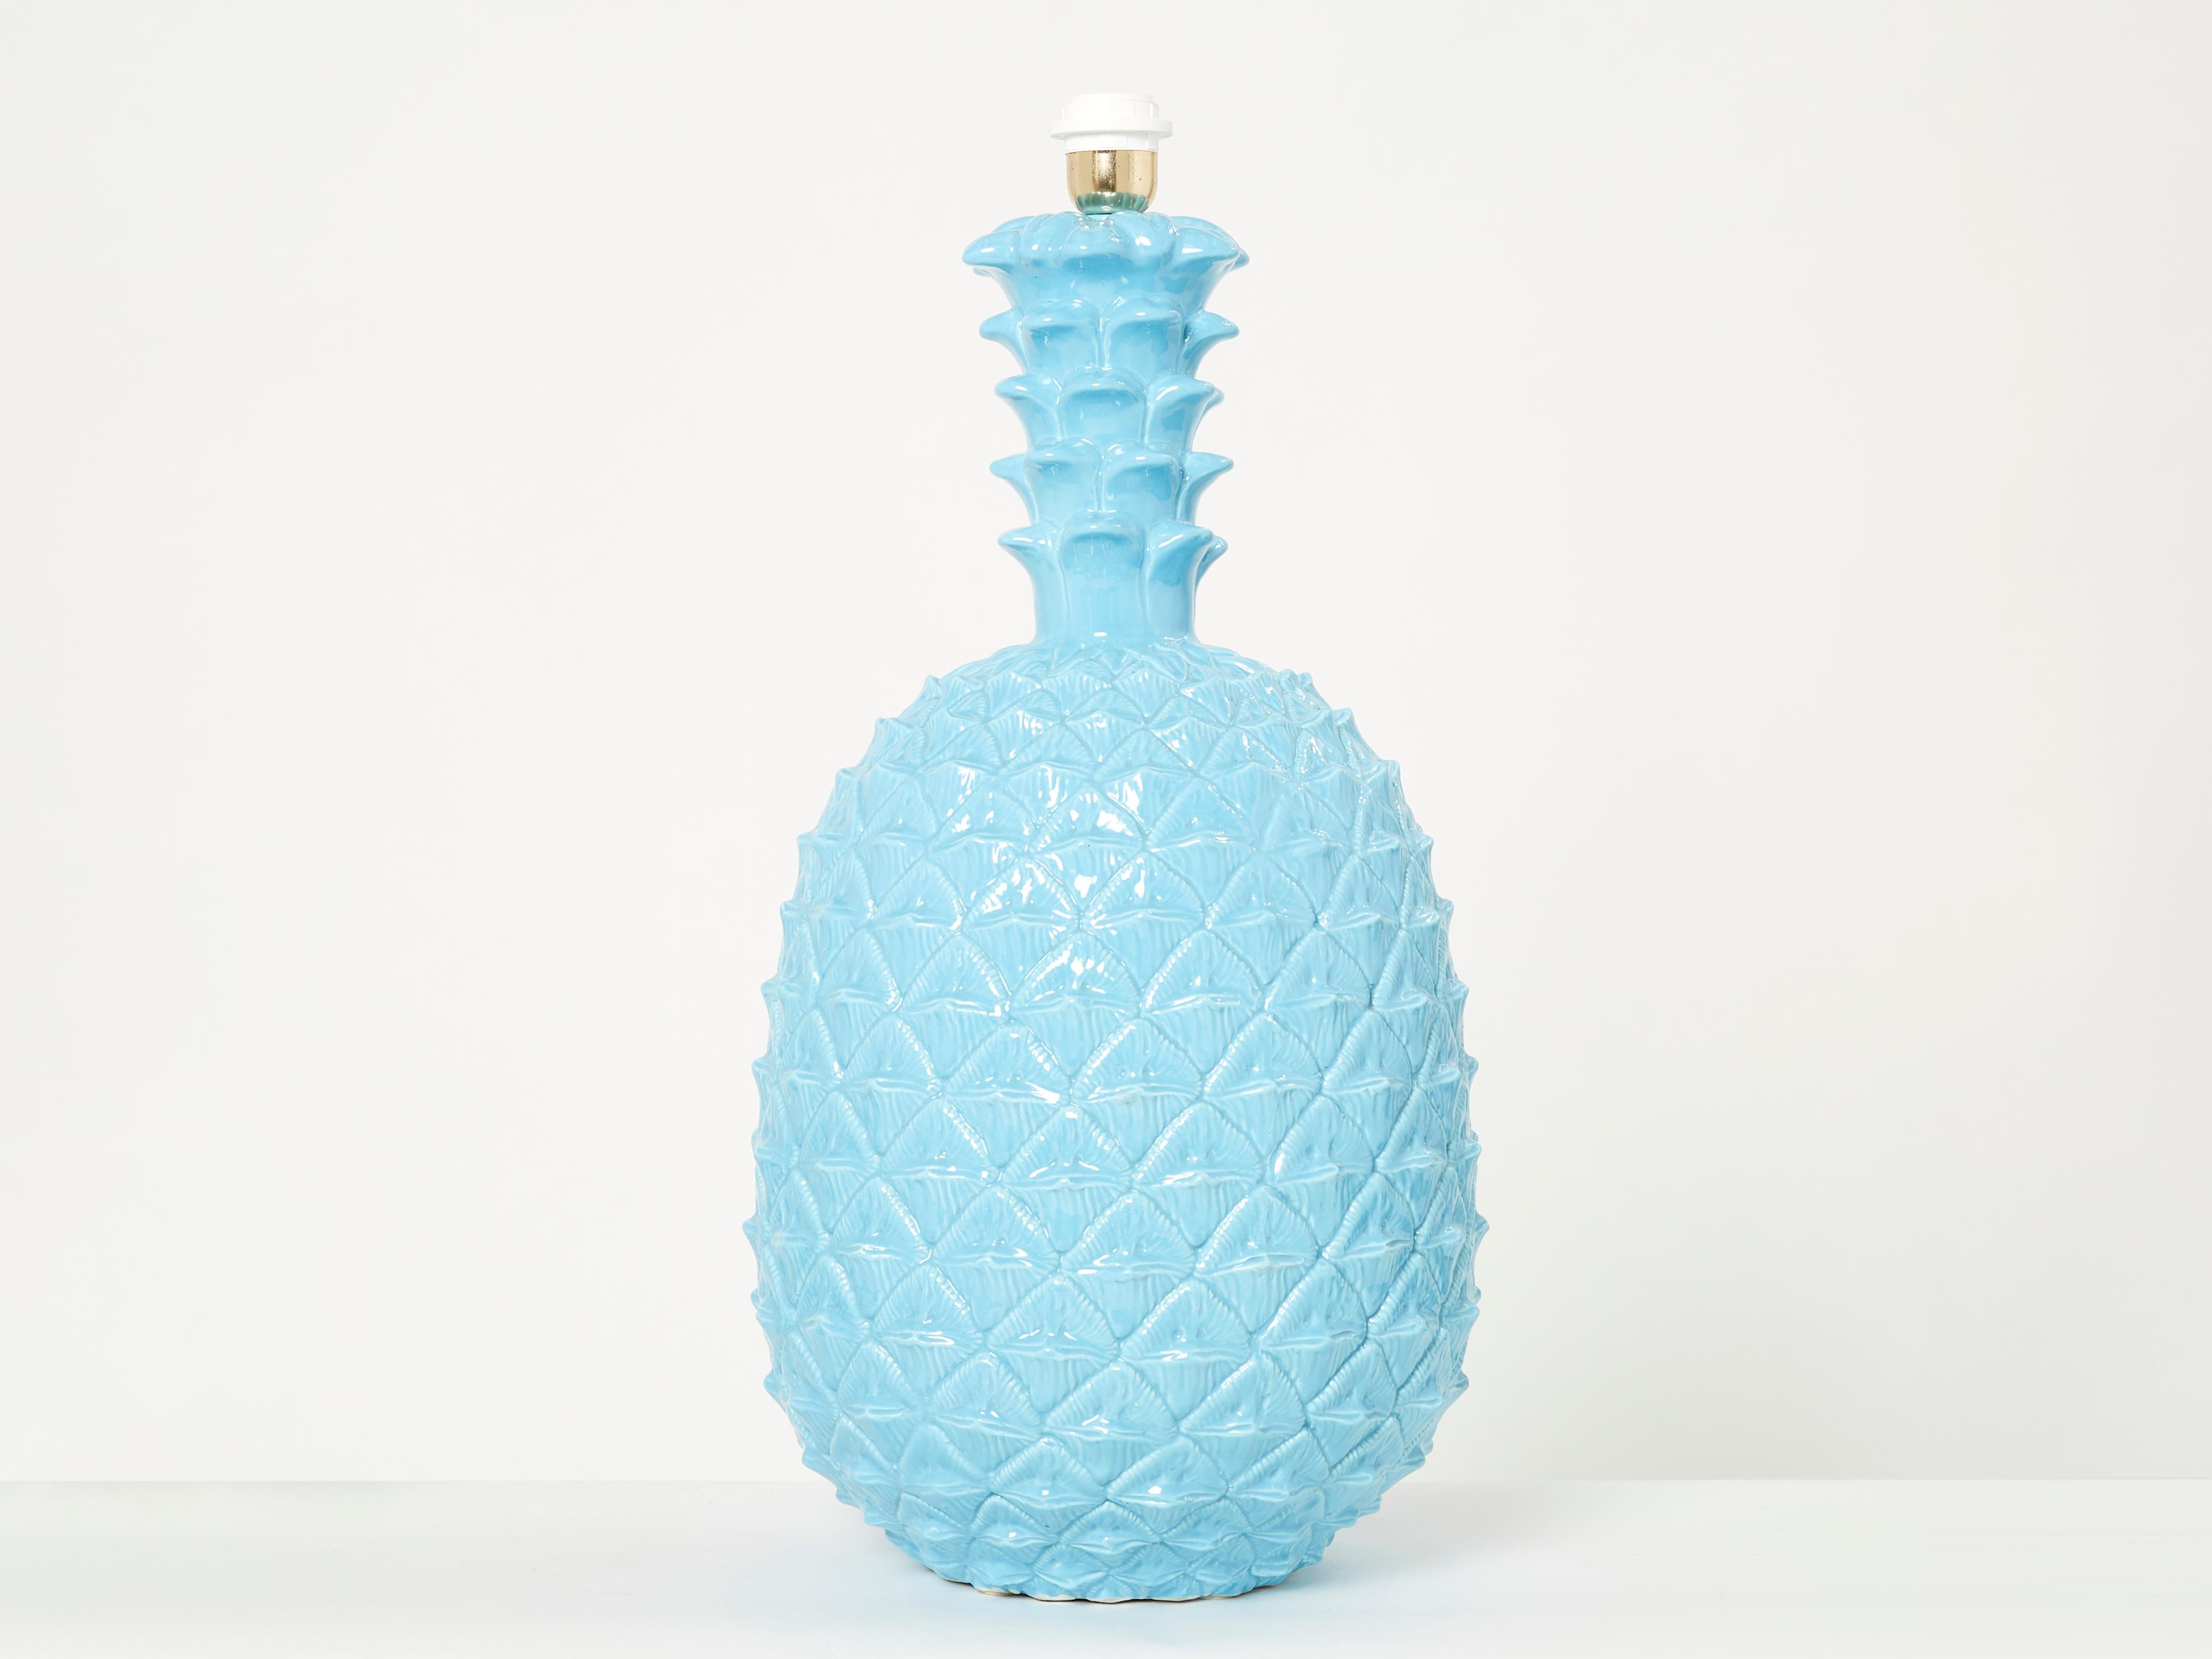 Magnifique lampe XL italienne en céramique bleu ananas par Tommaso Barbi, fabriquée à la fin des années 1970. Cette lampe de table bénéficie de l'artisanat exquis caractéristique des céramiques italiennes du milieu du siècle dernier de Barbi.